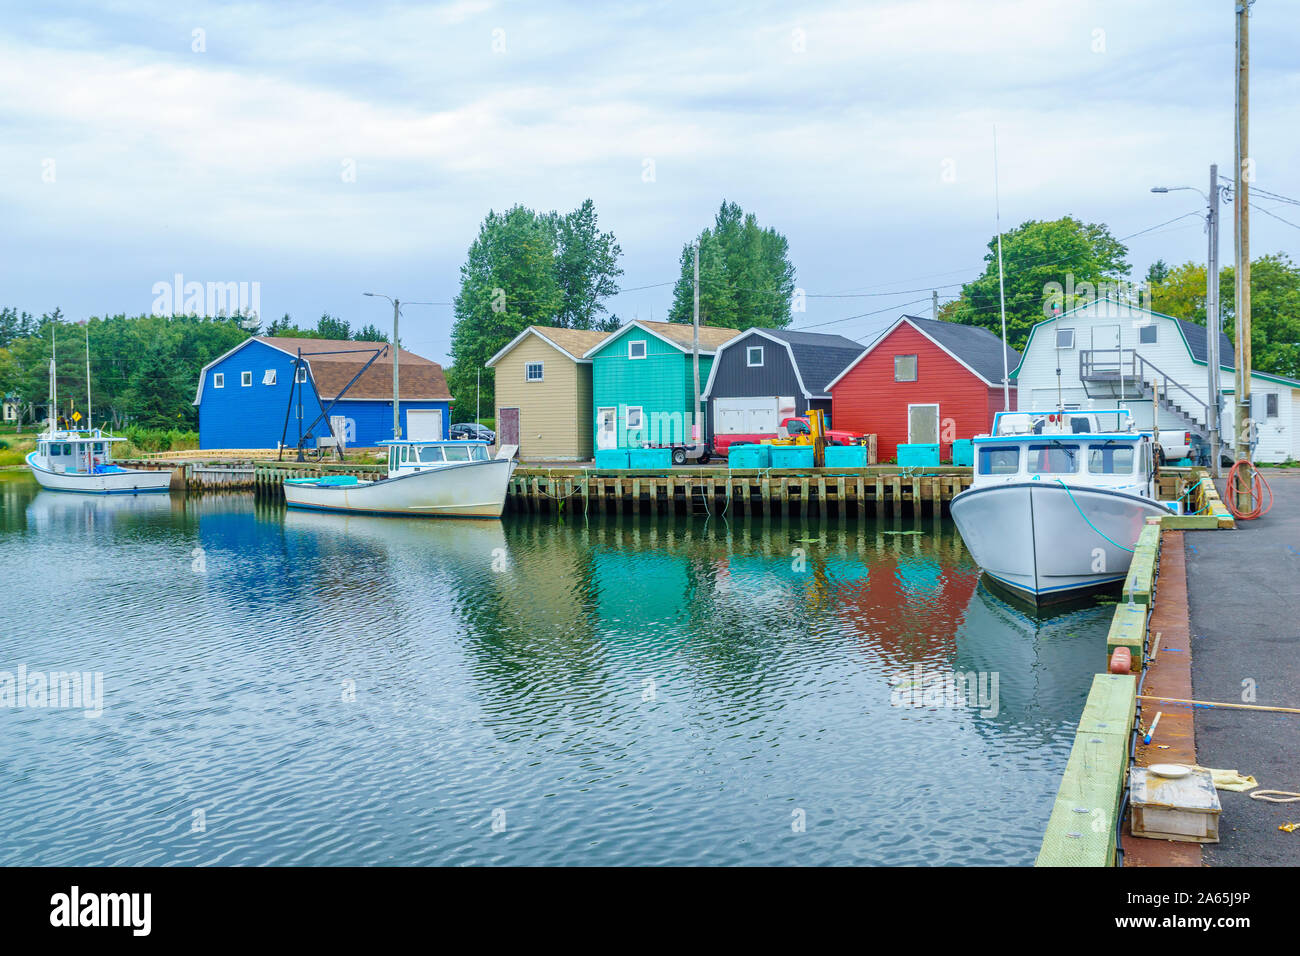 Vue du quai, des bateaux de pêche et ses maisons colorées, à Kensington, Prince Edward Island, Canada Banque D'Images